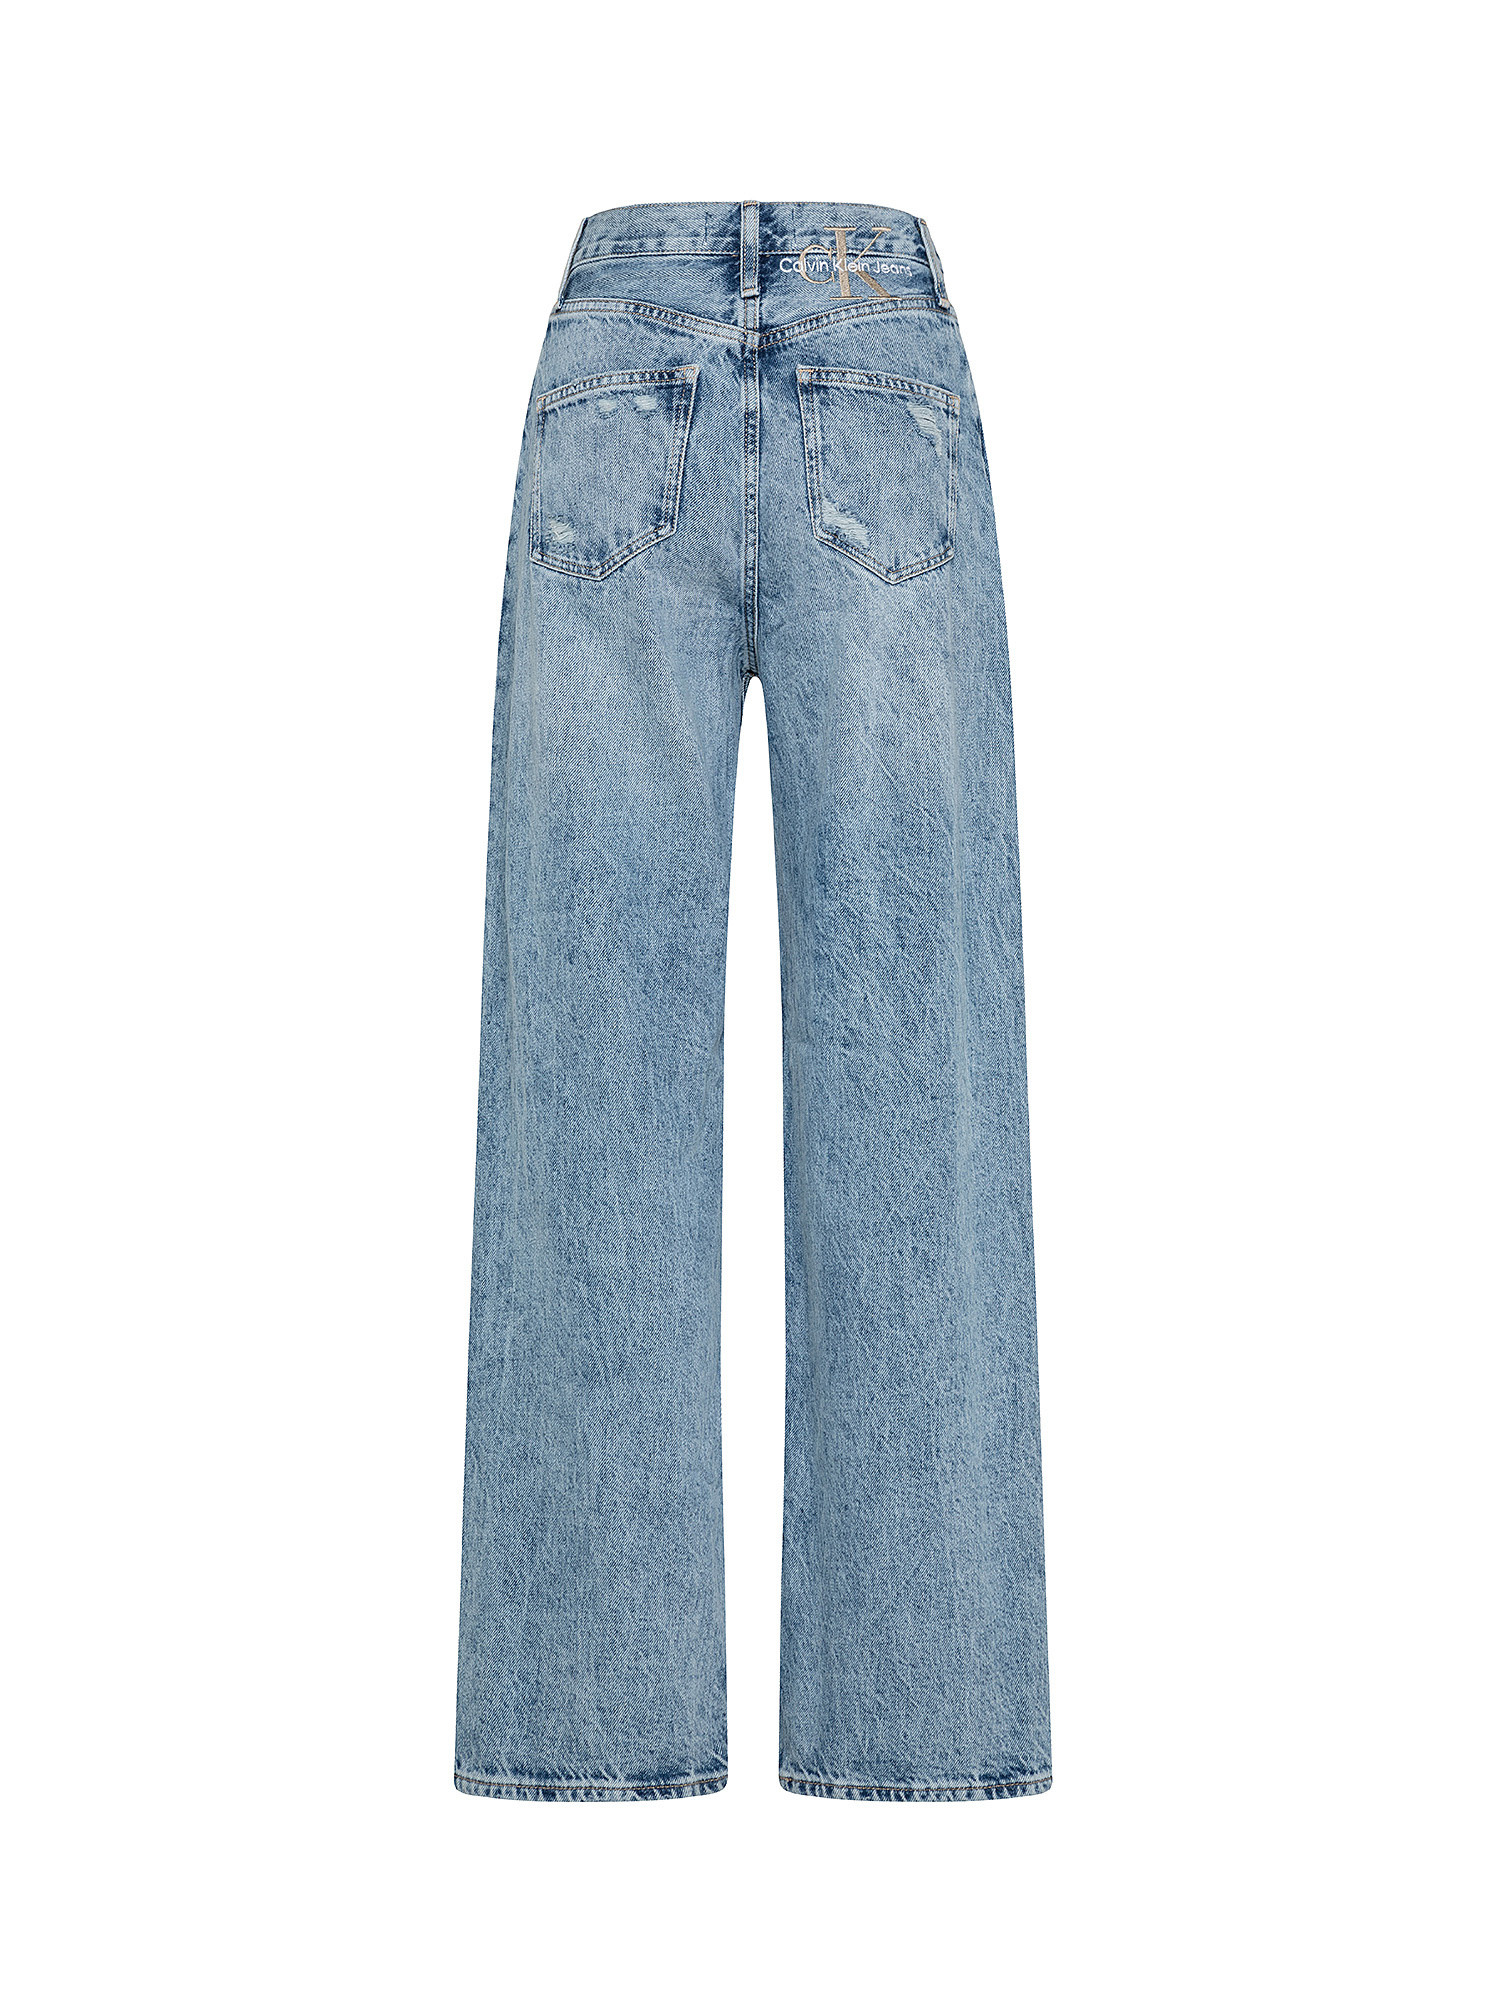 Five pocket wide leg jeans, Denim, large image number 1